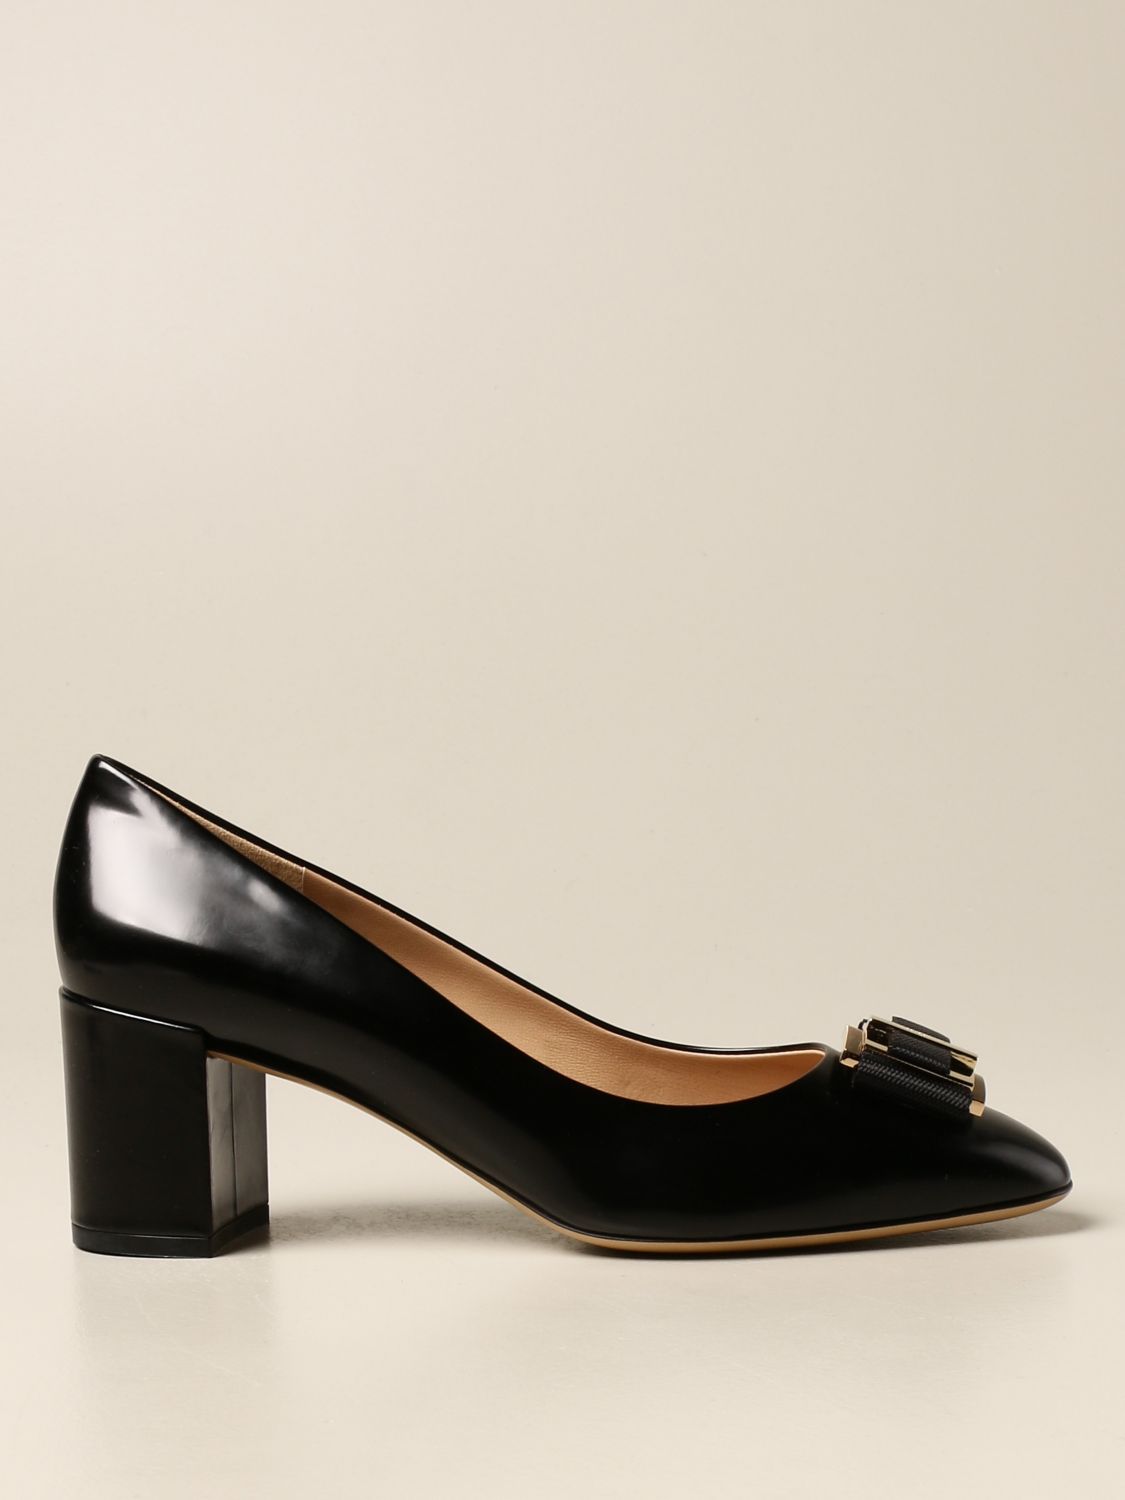 Outlet de Salvatore Ferragamo: Zapatos de salón para mujer, Negro | Zapatos De SalÓN Salvatore Ferragamo 672625 en línea GIGLIO.COM